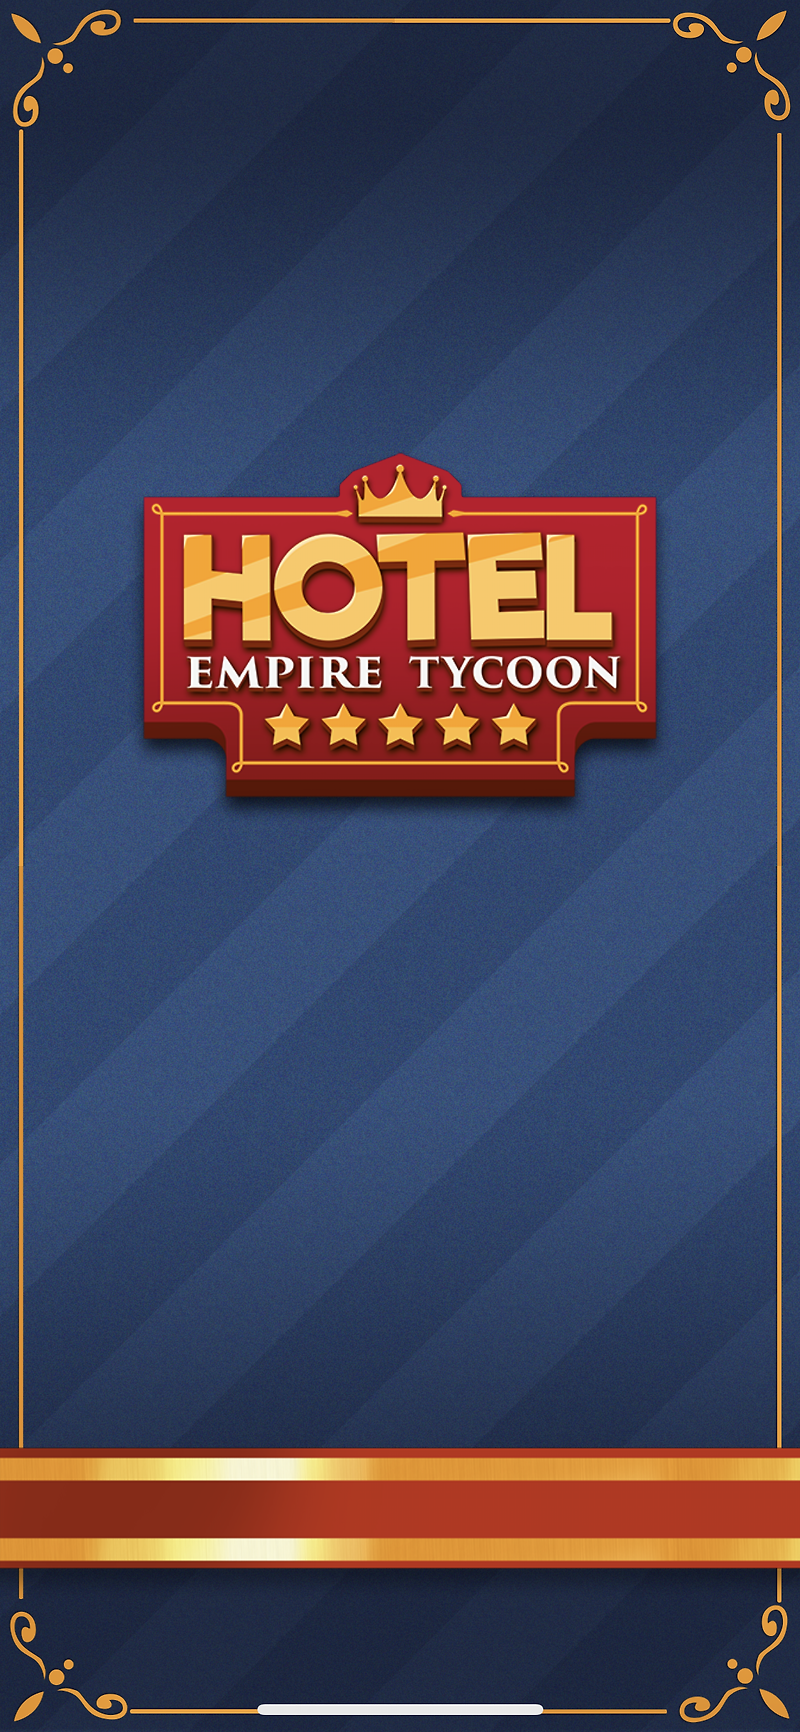 HotelEmpire tycoon - 약간의 과금 필요한 게임